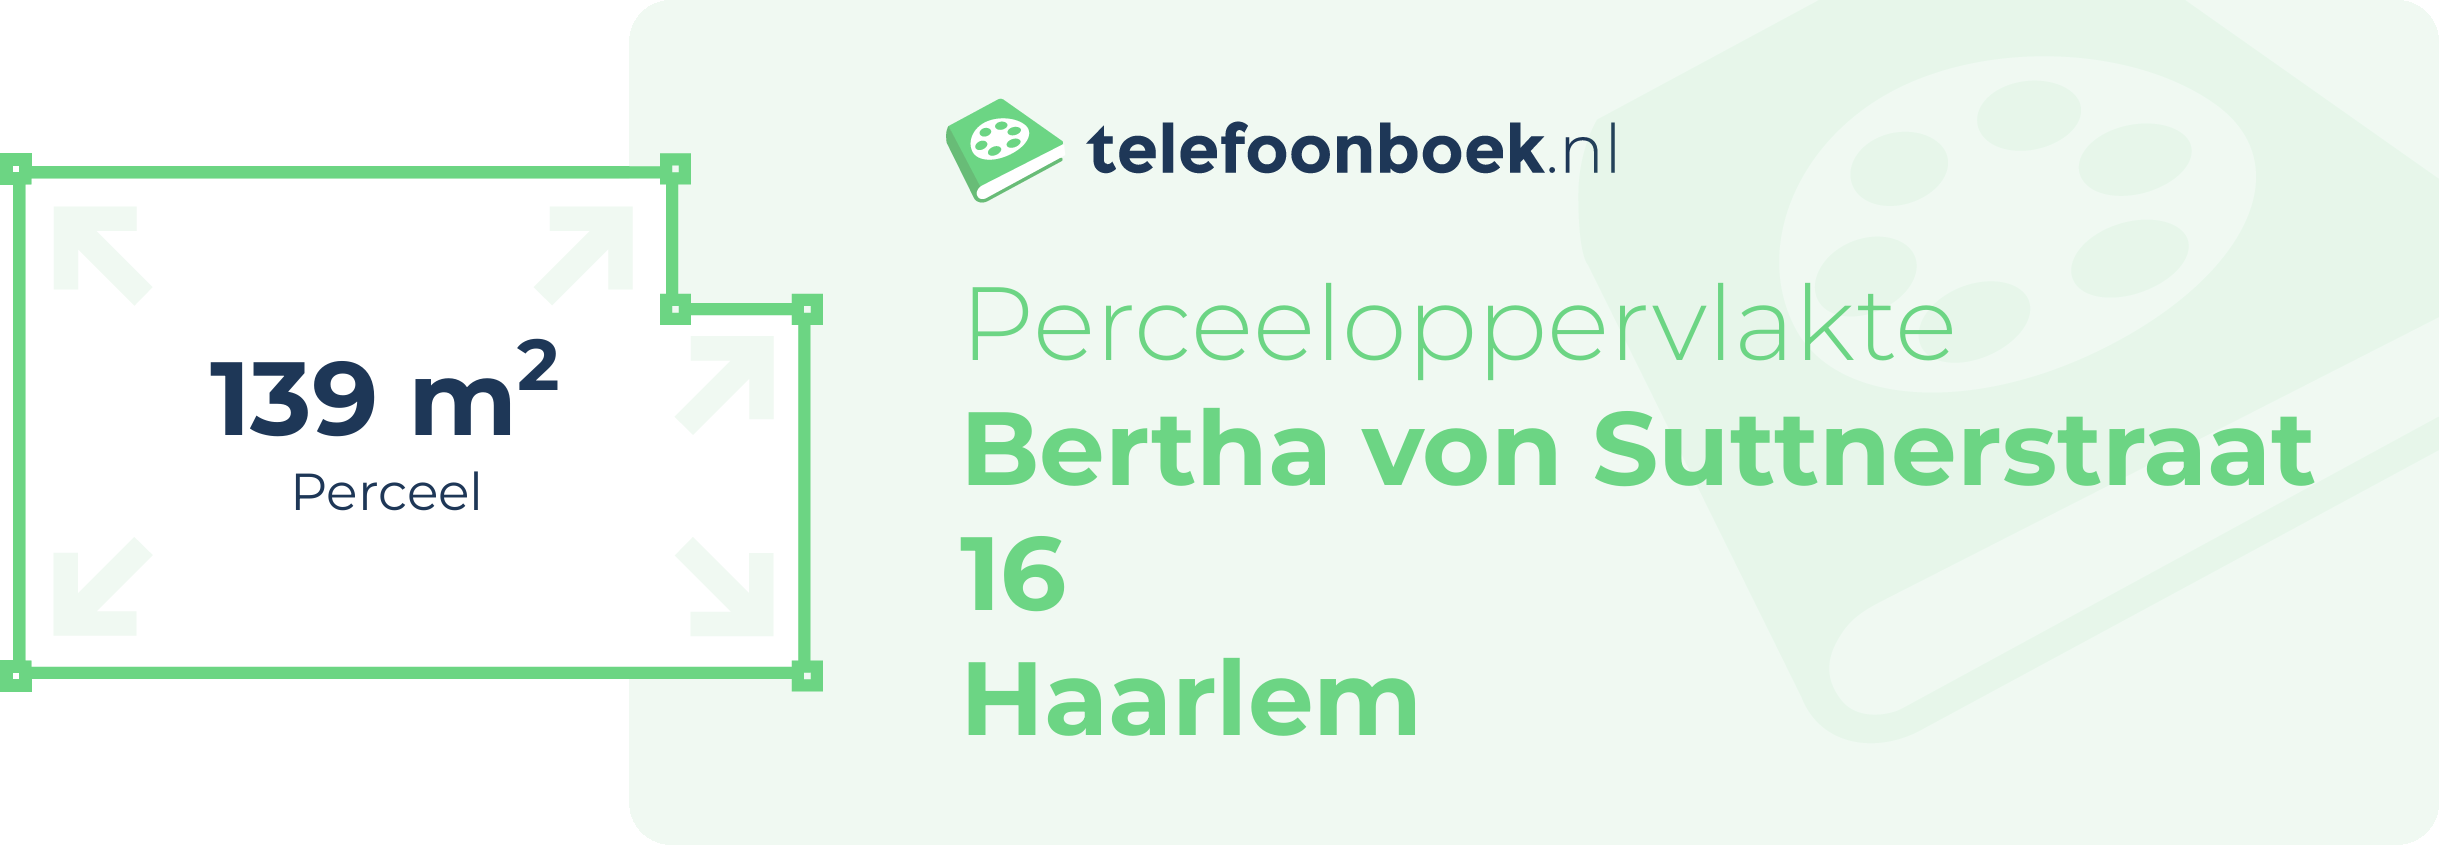 Perceeloppervlakte Bertha Von Suttnerstraat 16 Haarlem